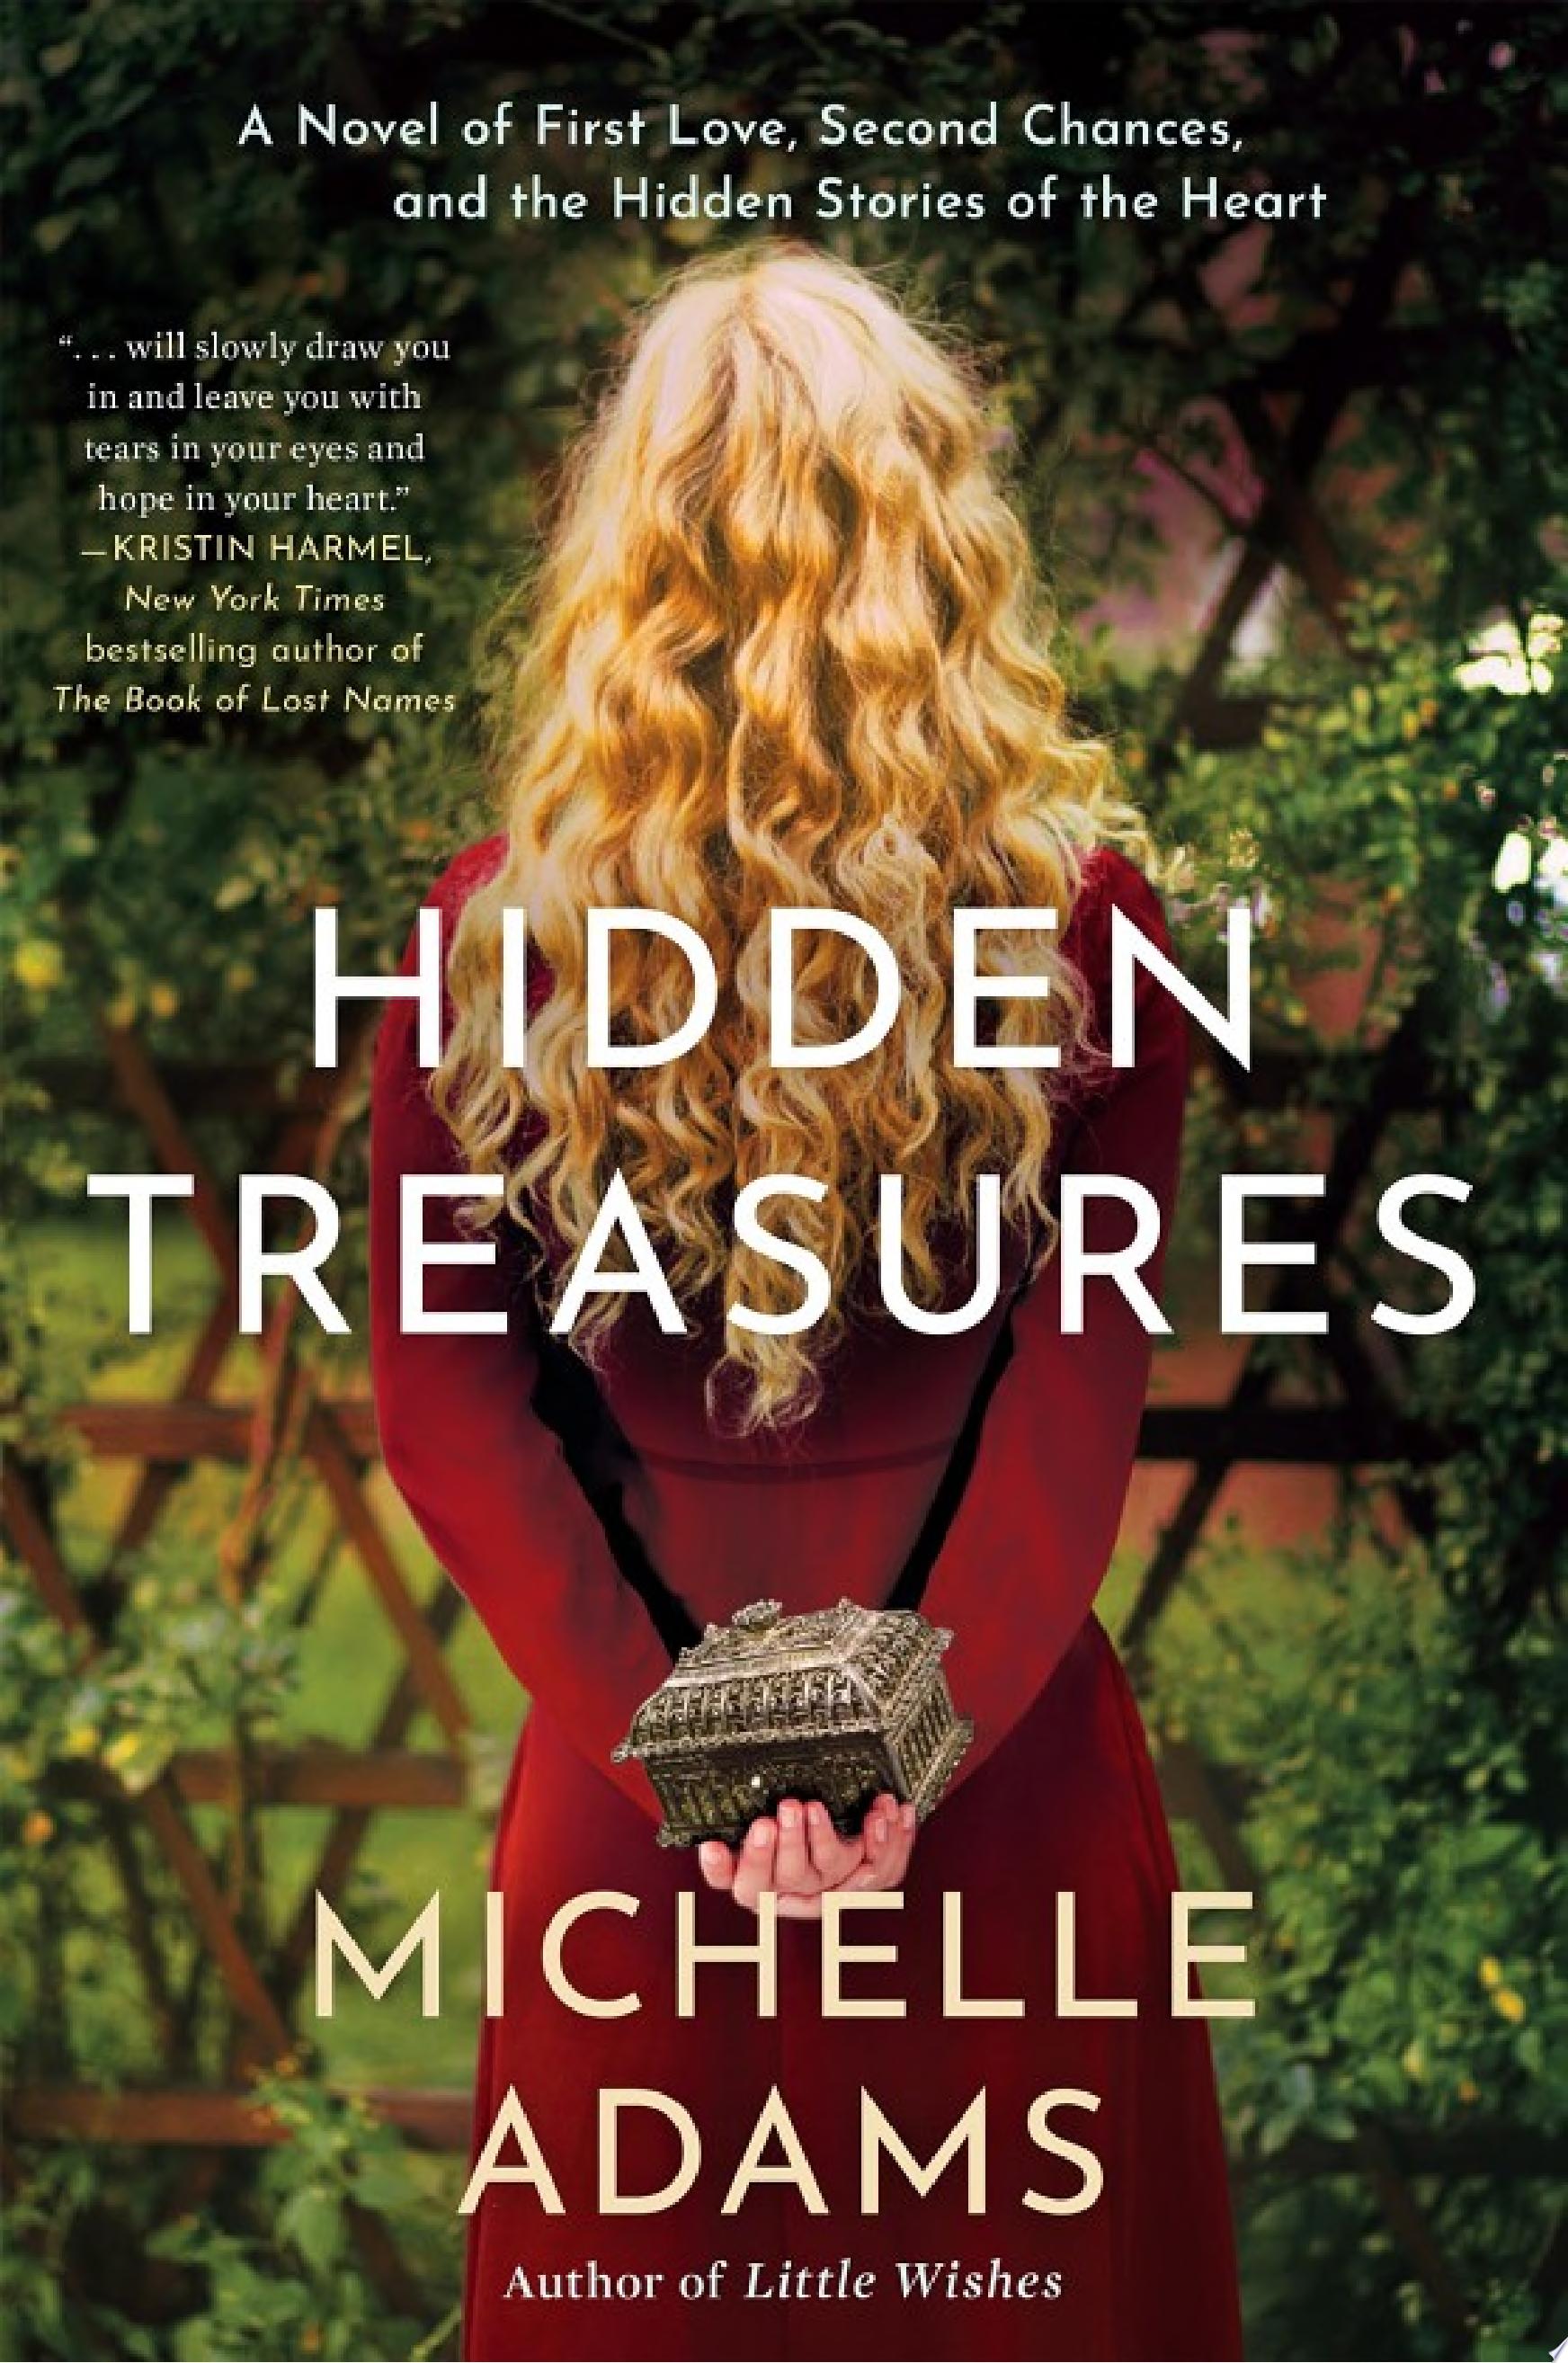 Image for "Hidden Treasures"